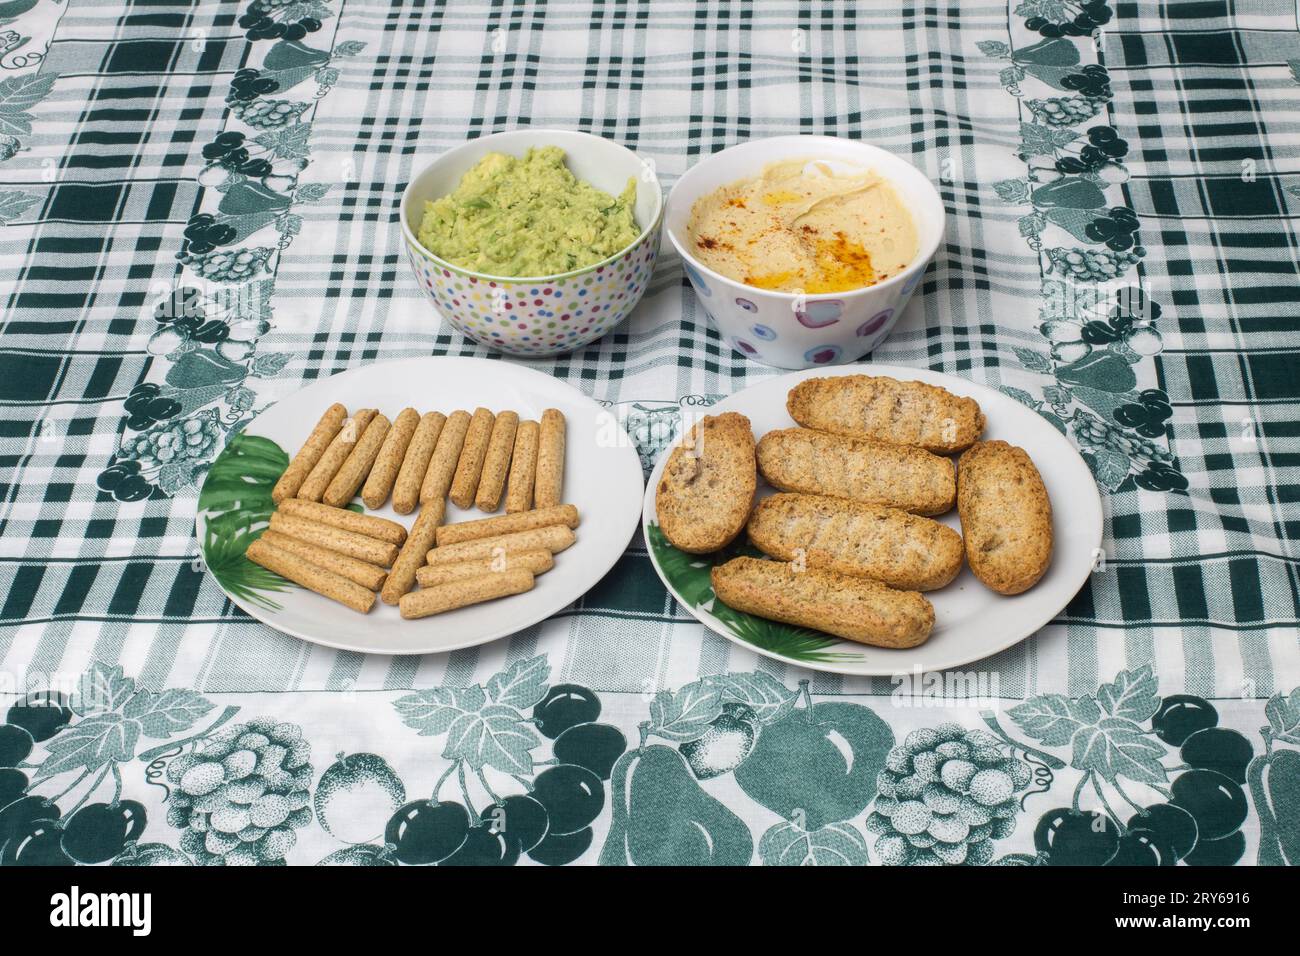 Zwei kleine Schüsseln mit hausgemachtem Hummus und Guacamole, begleitet von Platten mit Vollkorntoast und Toaststäbchen auf einer stilvollen Tischdecke Ador Stockfoto